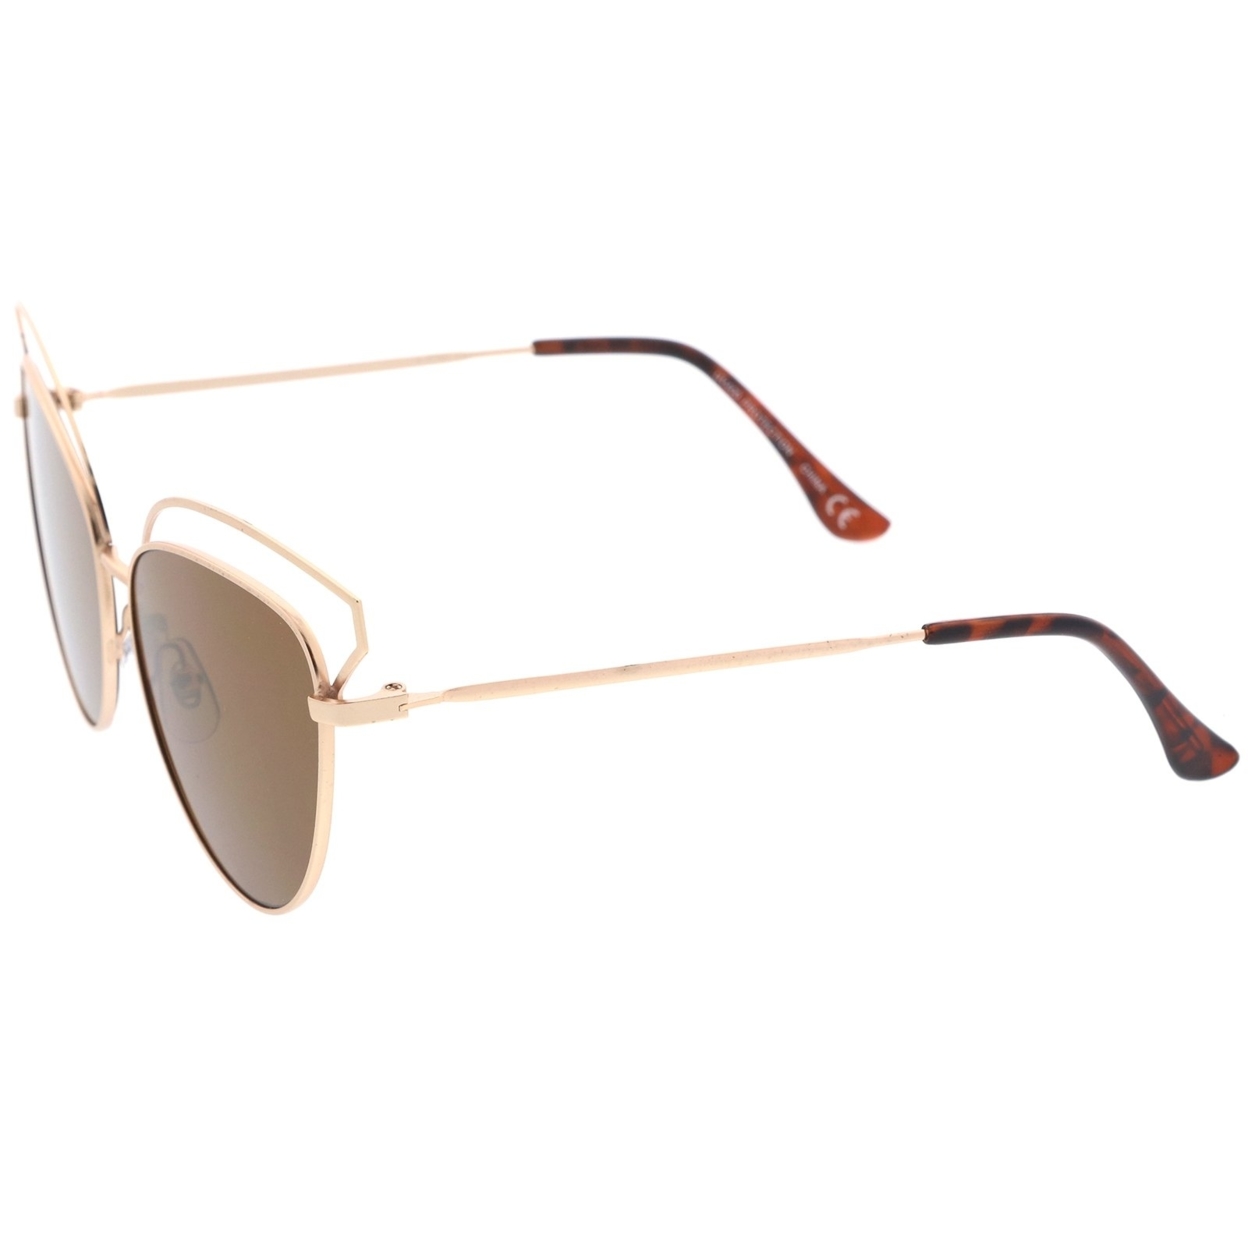 Women's Open Metal Frame Slim Temple Oversize Cat Eye Sunglasses 58mm - White / Lavender